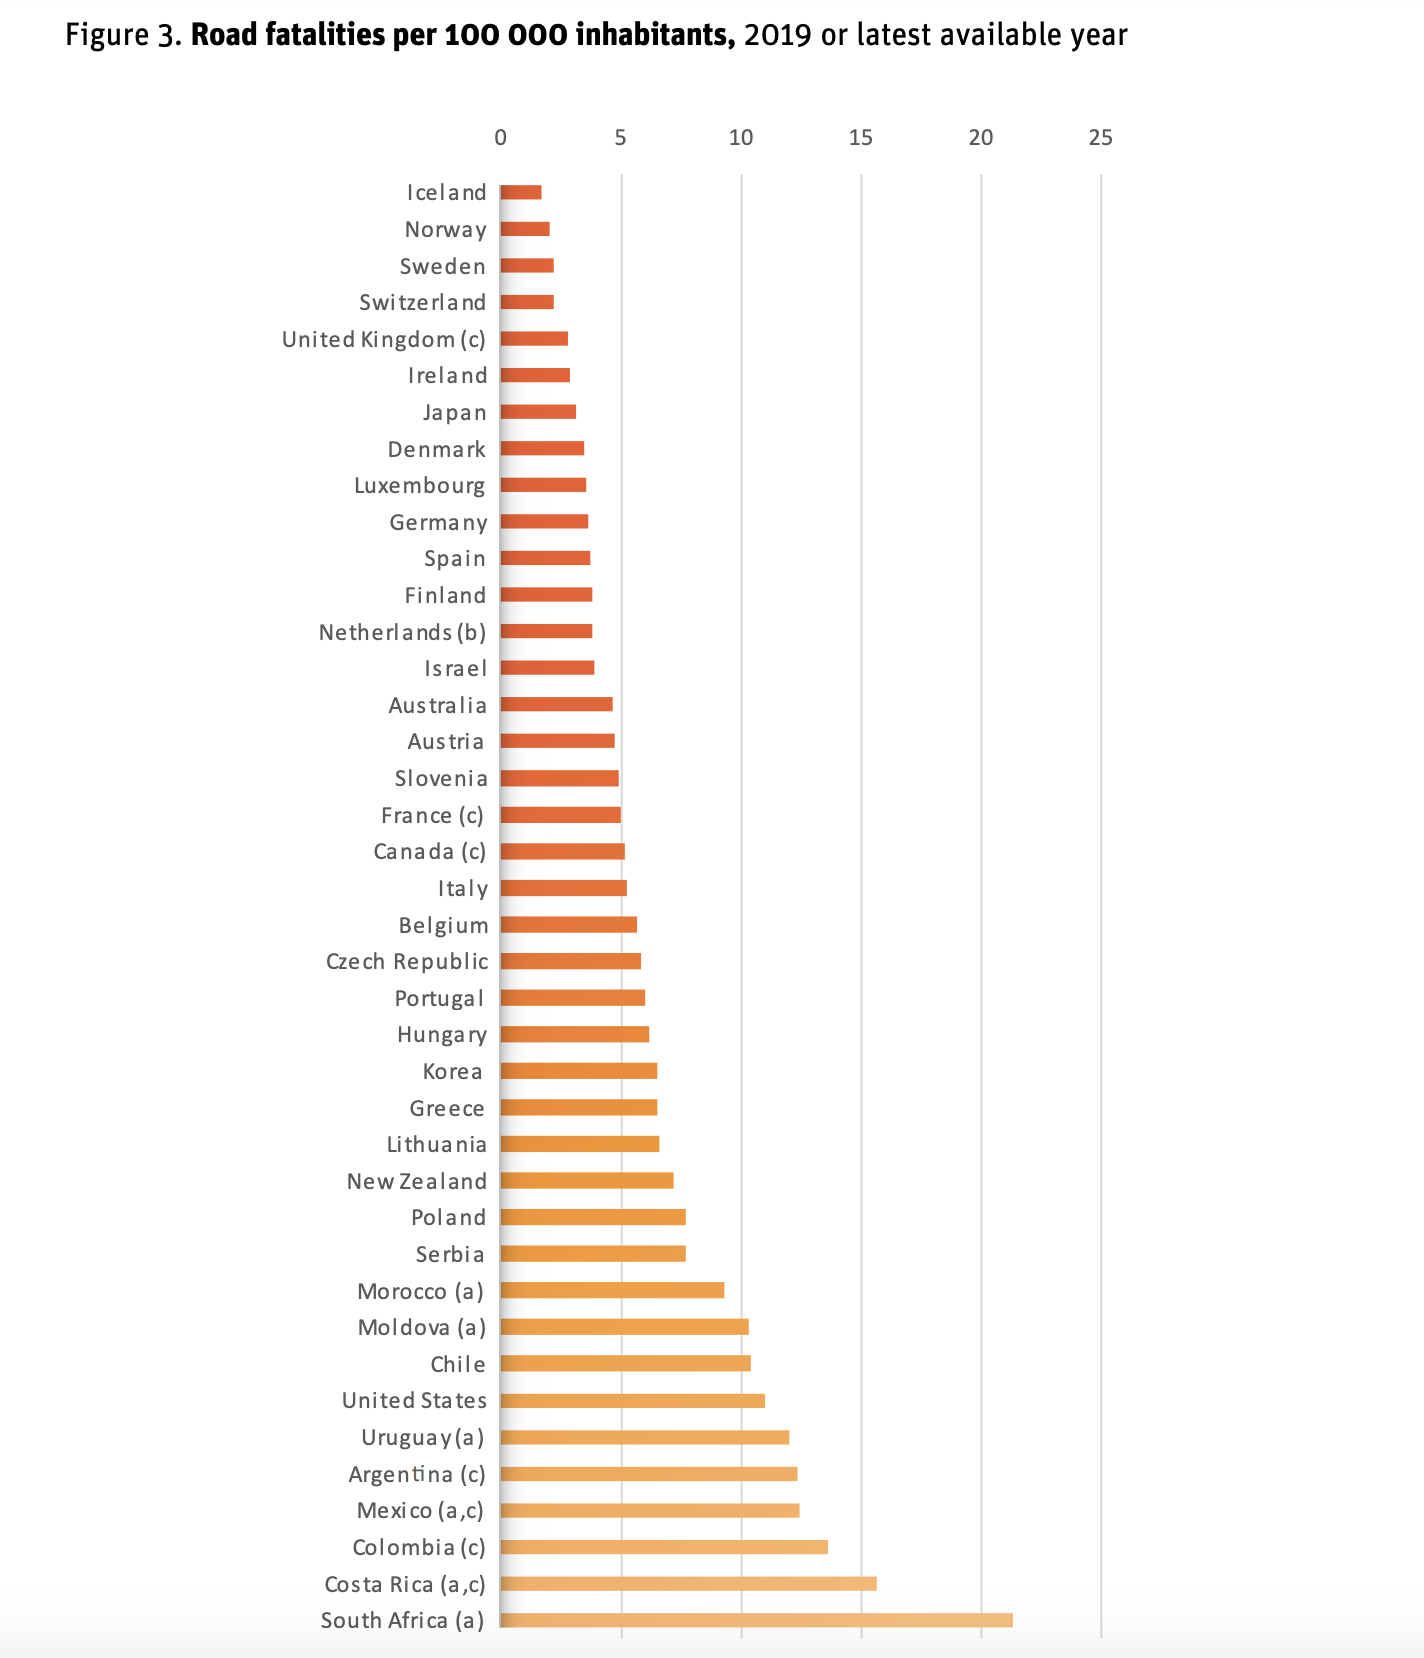 Los países con más choques y muertes el año pasado
Infografía de IRTAD